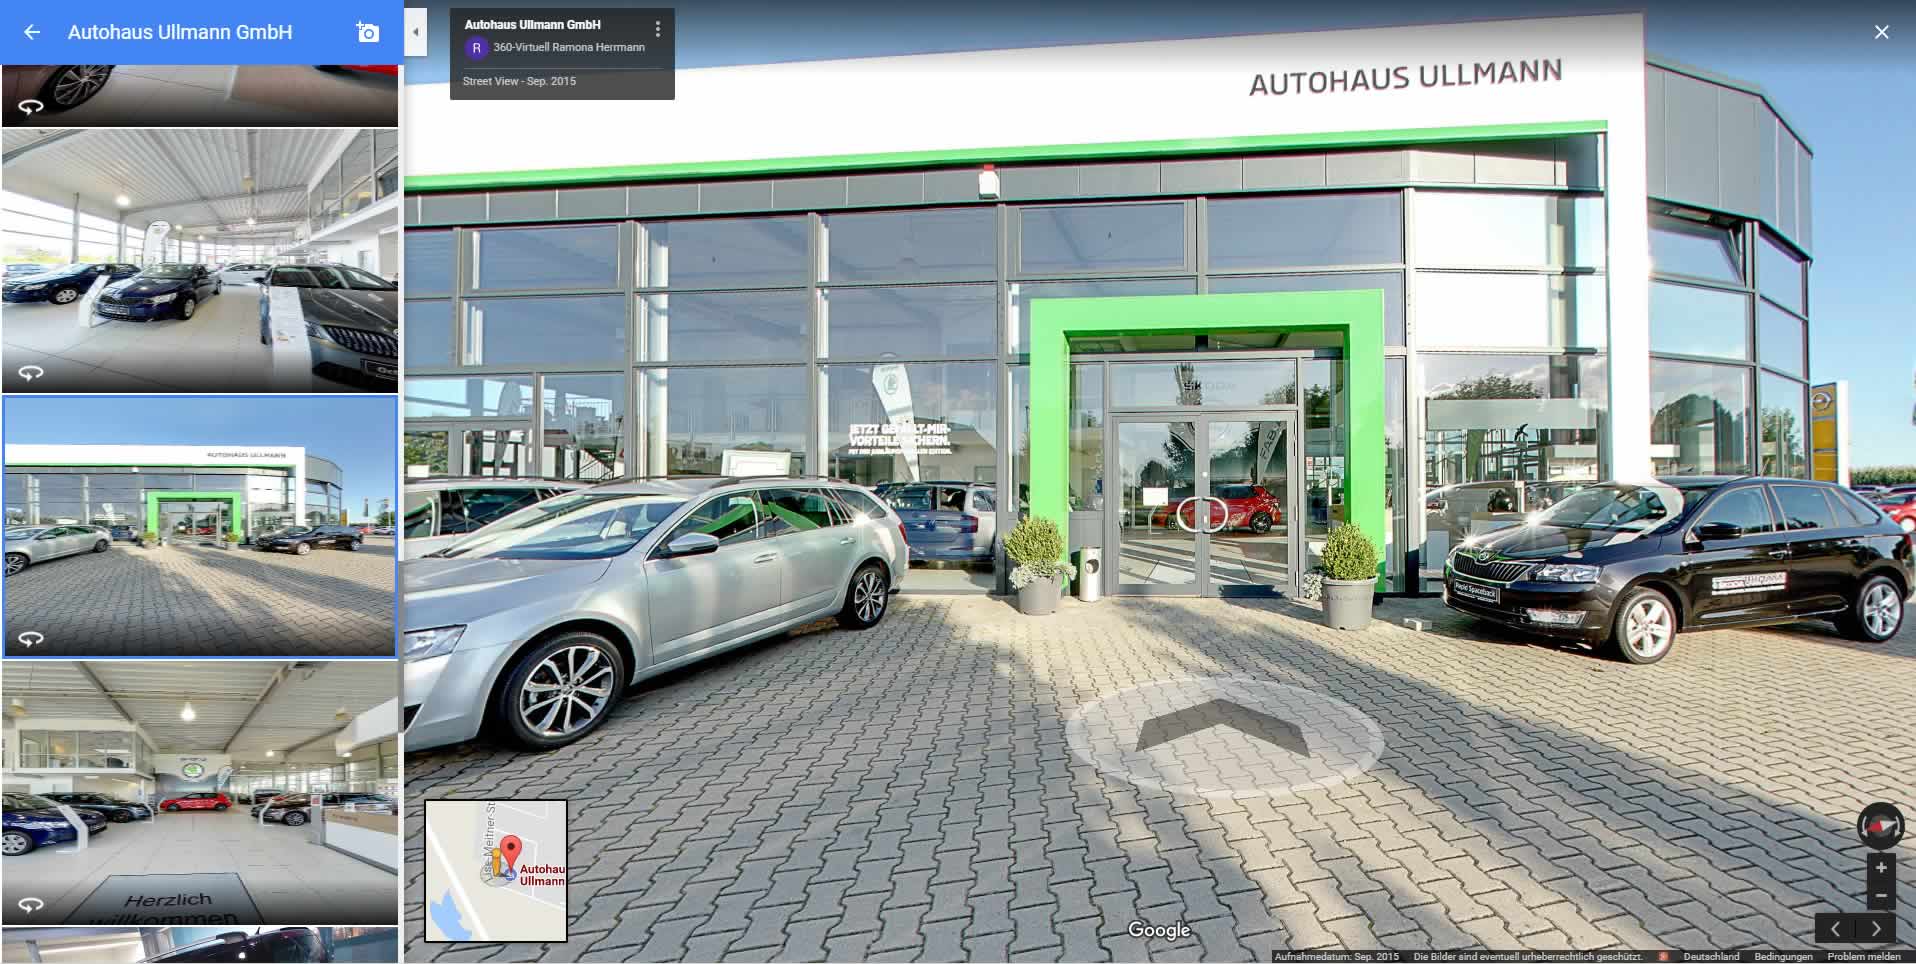 Ein 360 Grad Rundgang durch ein Autohaus. Ein nützliches Marketingtool für Autohäuser.